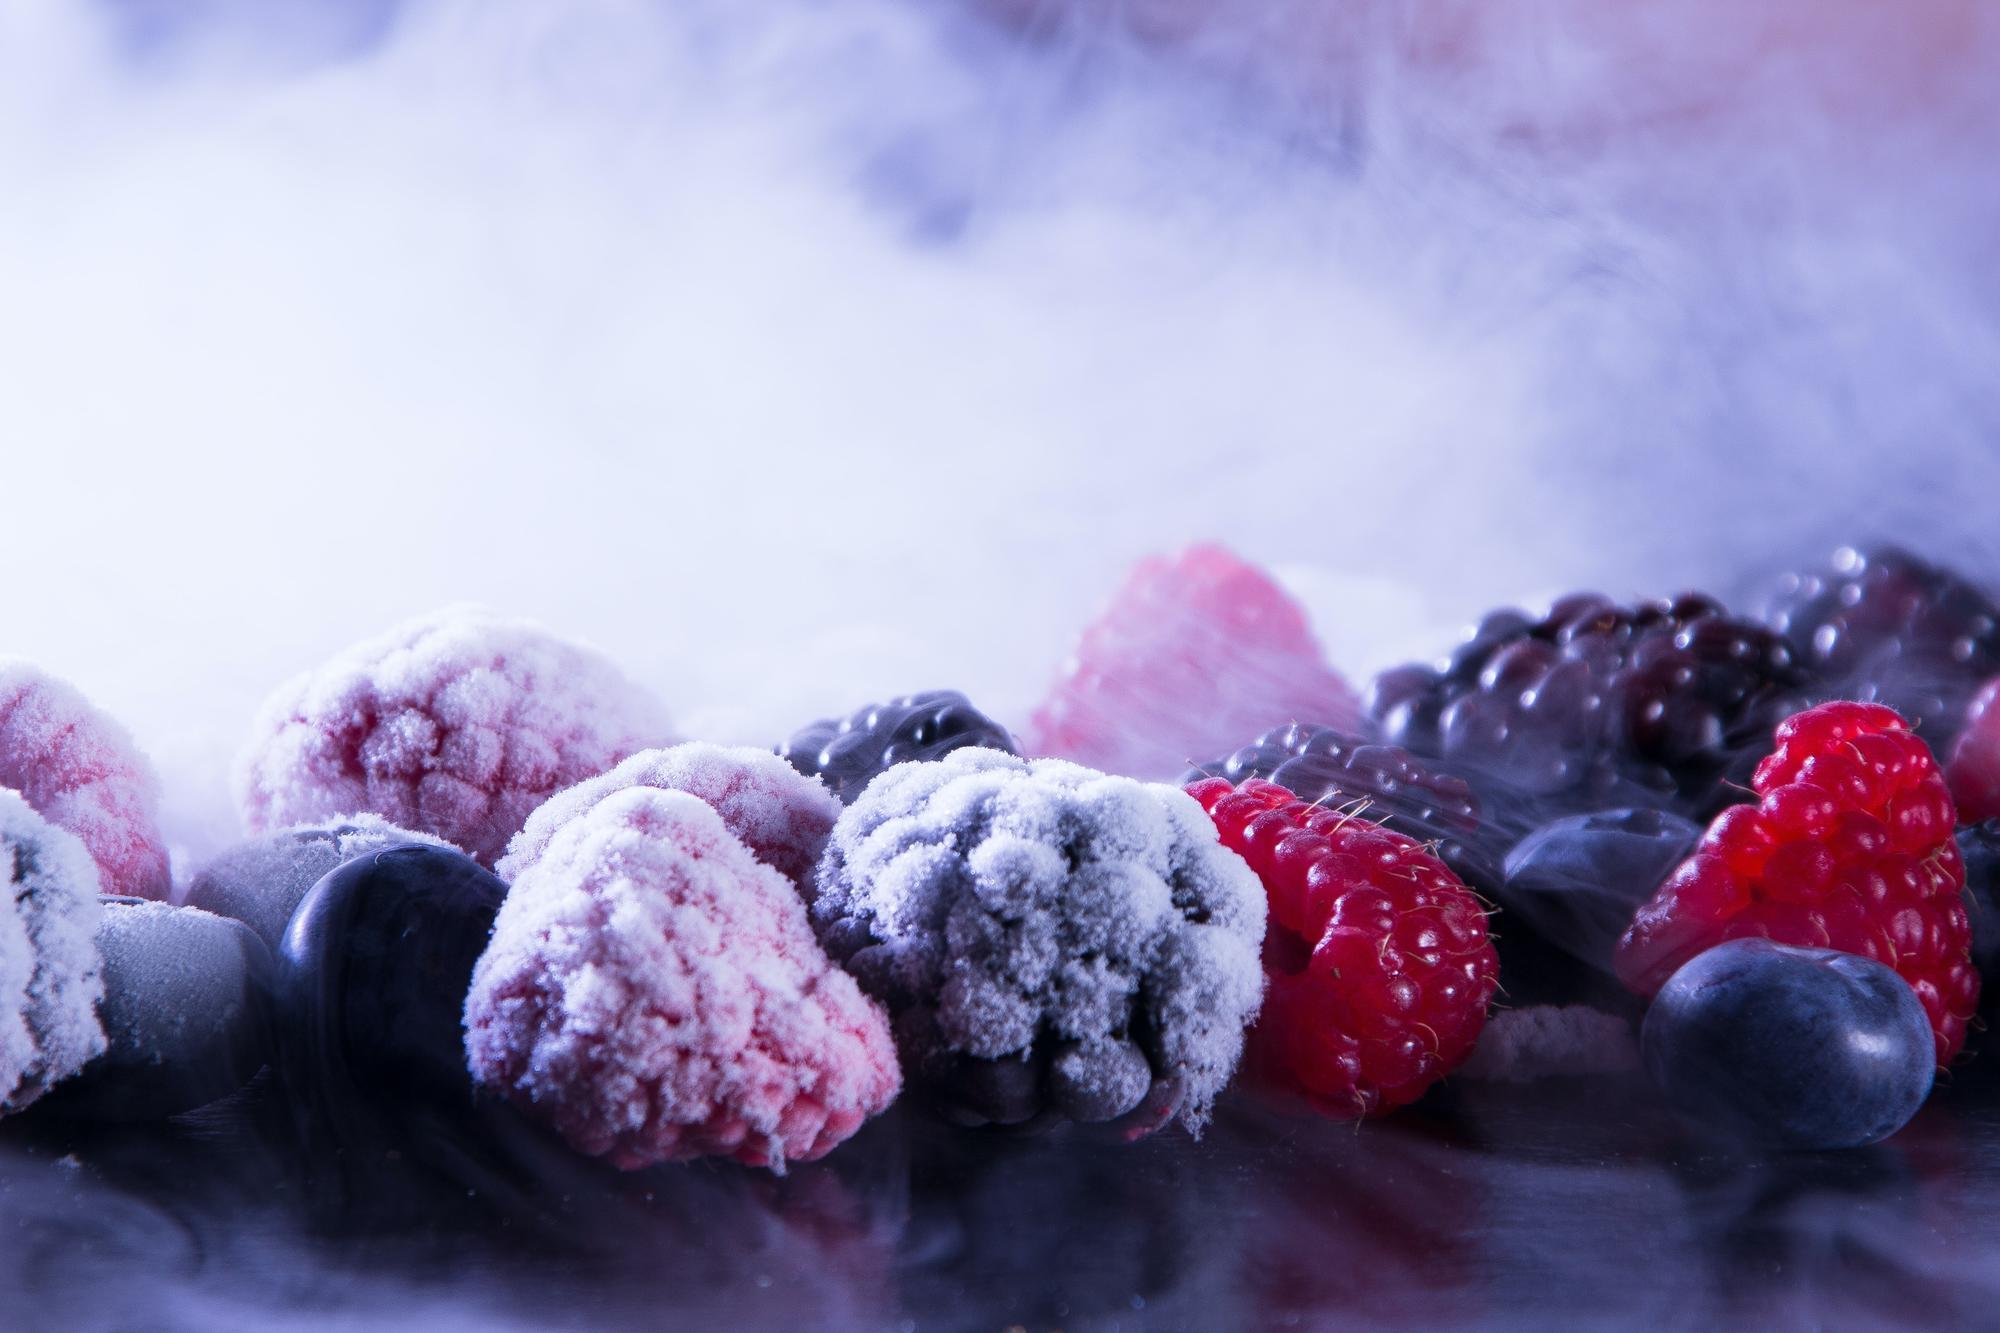 Frozen berries including raspberries, blackberries and blueberries.